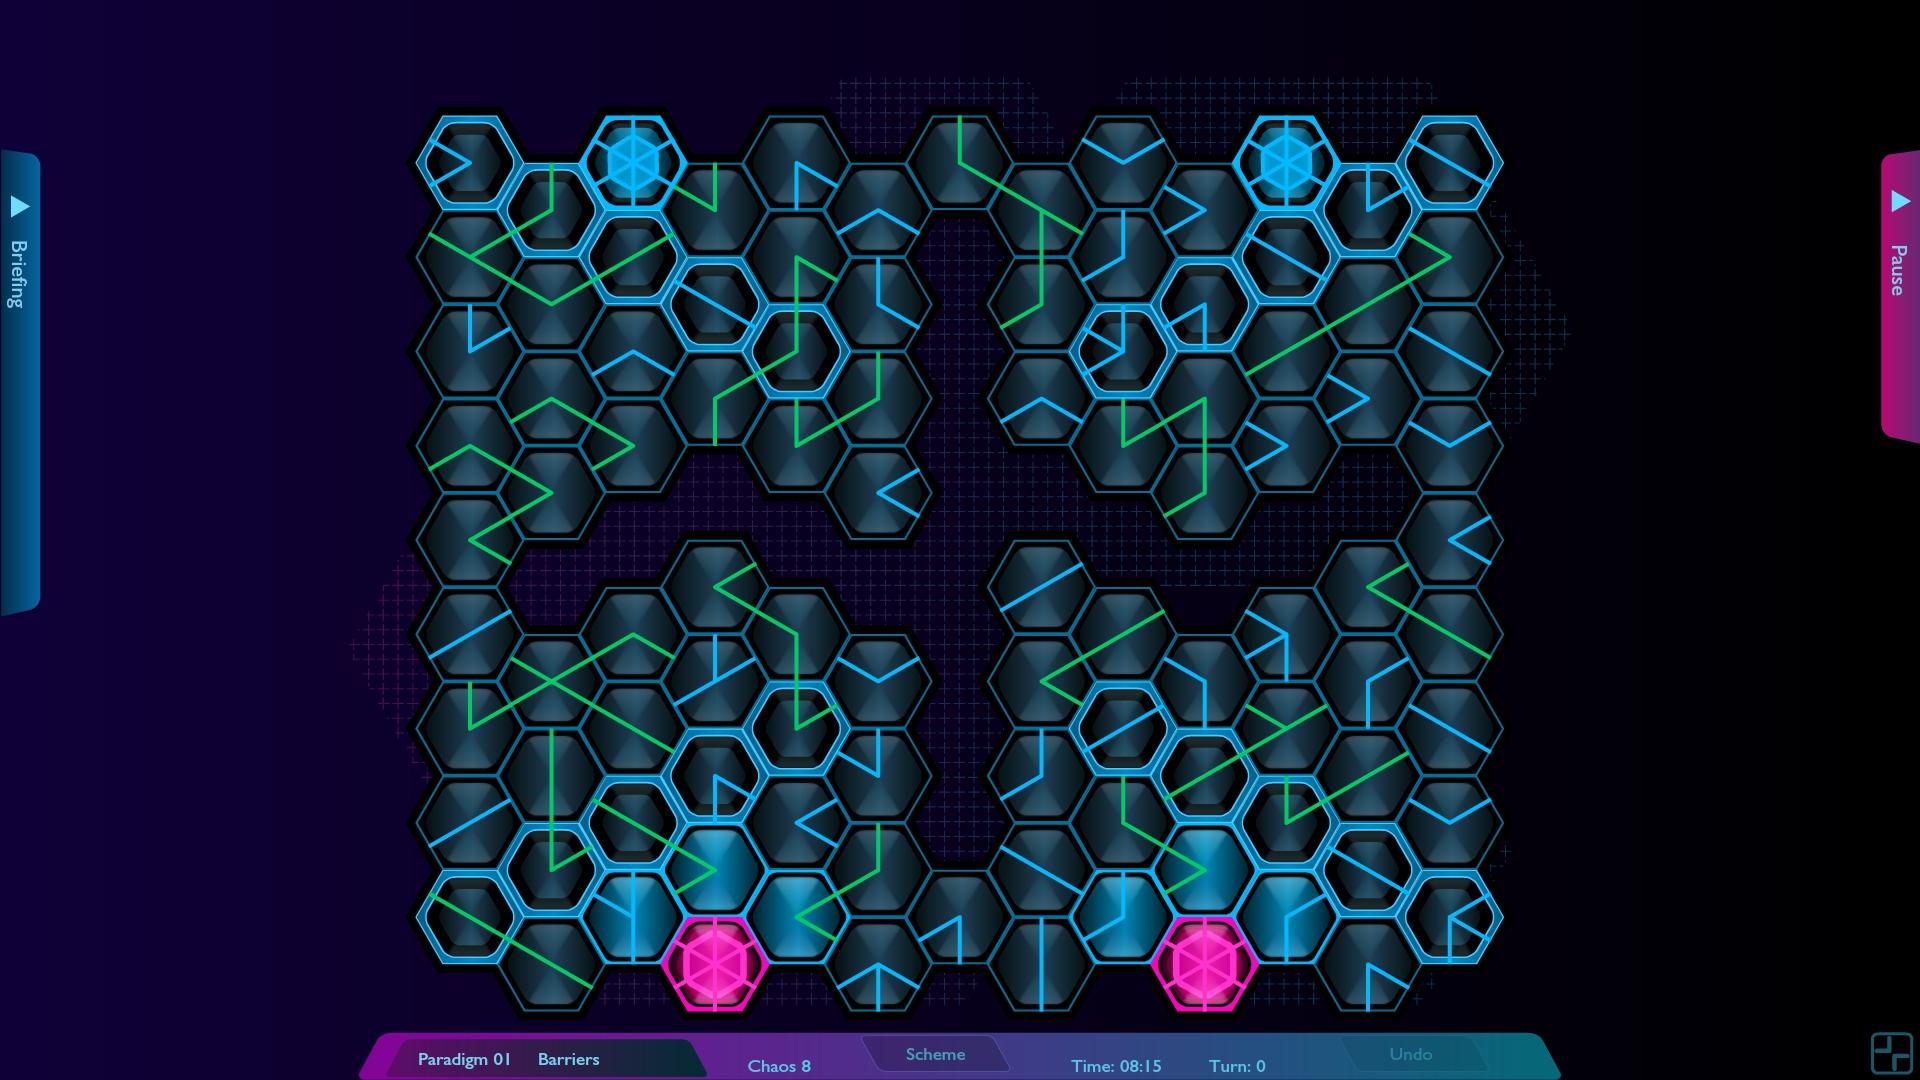 Screenshot №14 from game Hexoscope